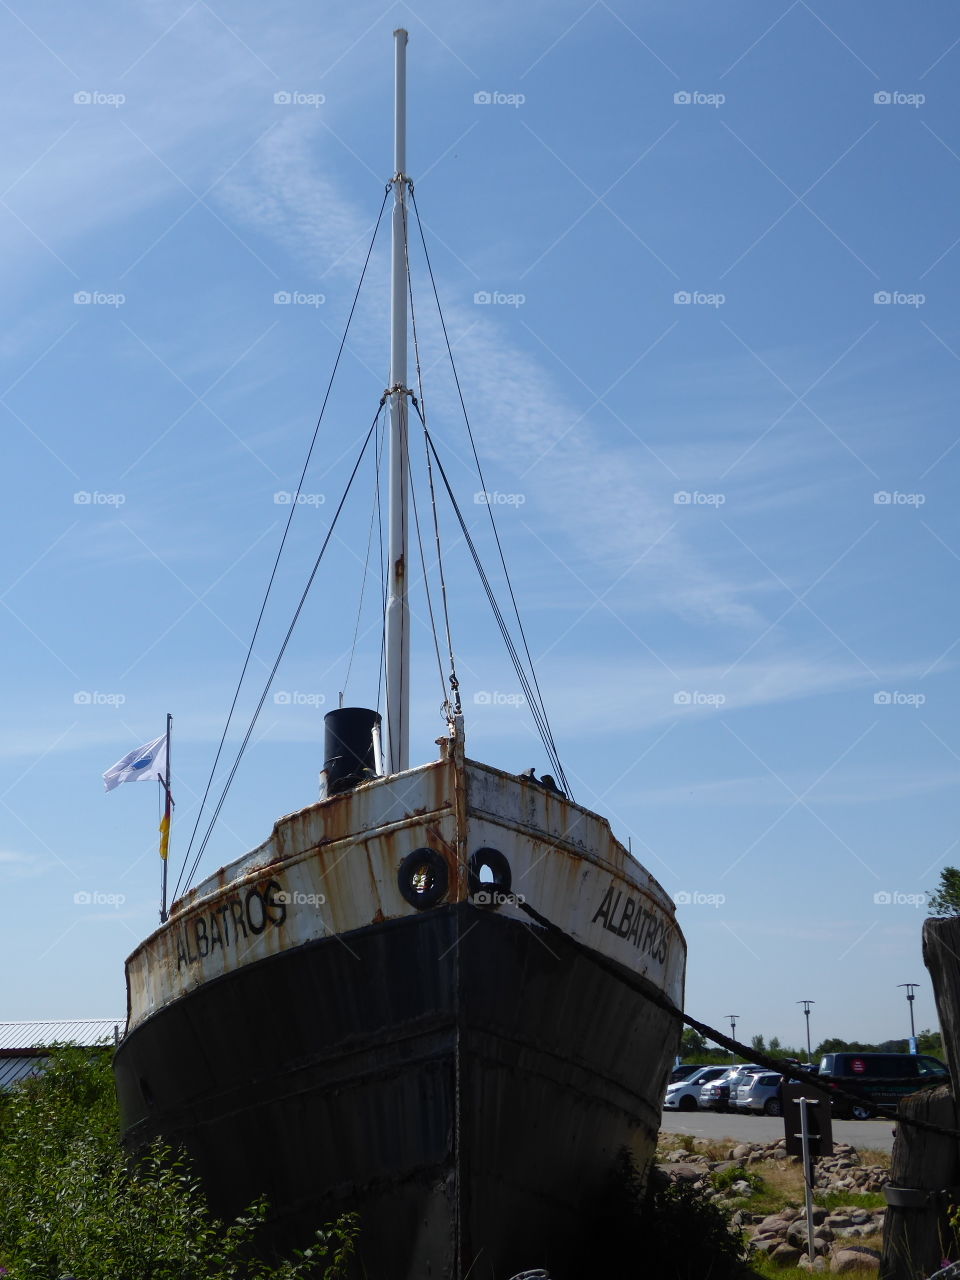 Museum ship Albatros - Damp S-H Germany 